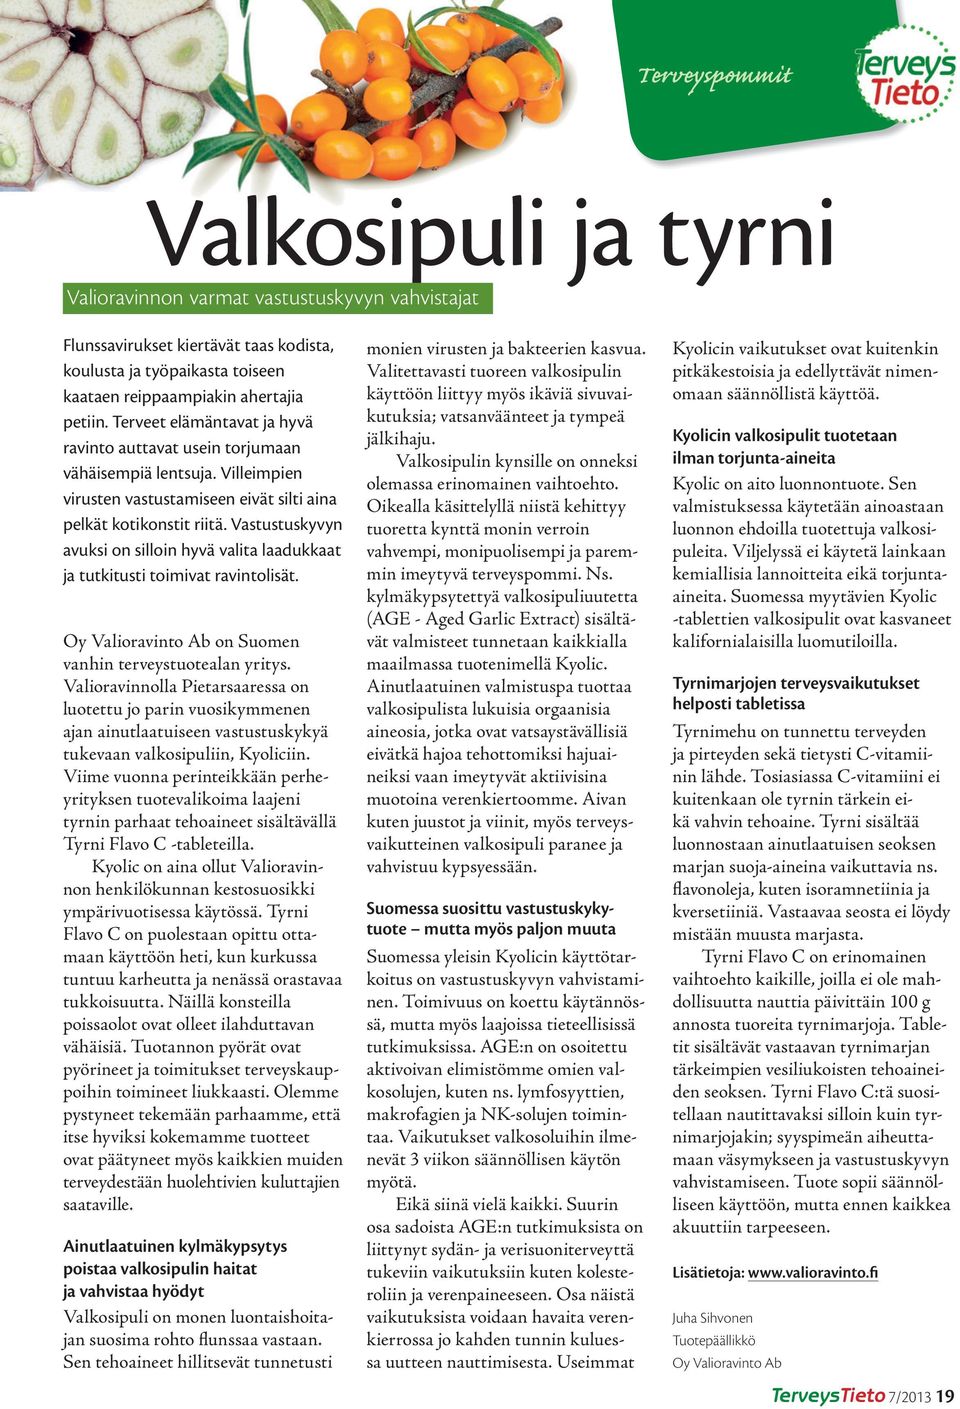 Vastustuskyvyn avuksi on silloin hyvä valita laadukkaat ja tutkitusti toimivat ravintolisät. Oy Valioravinto Ab on Suomen vanhin terveystuotealan yritys.